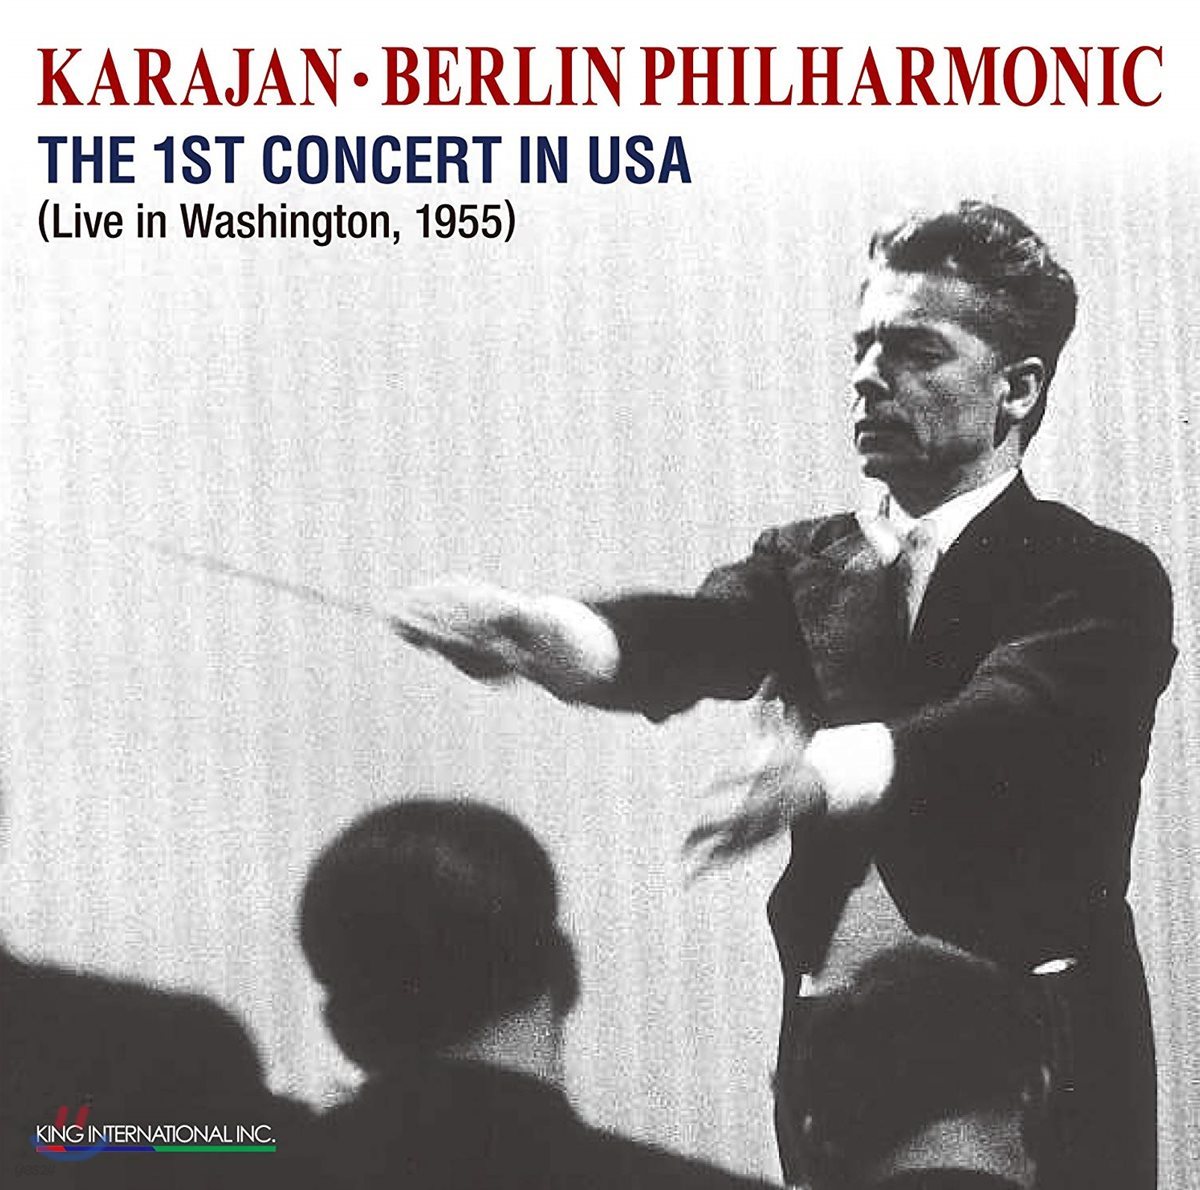 카라얀 / 베를린 필하모닉 1955년 워싱턴 라이브 콘서트 실황 (Herbert von Karajan & Berlin Philharmonic - The 1st Concert in USA)